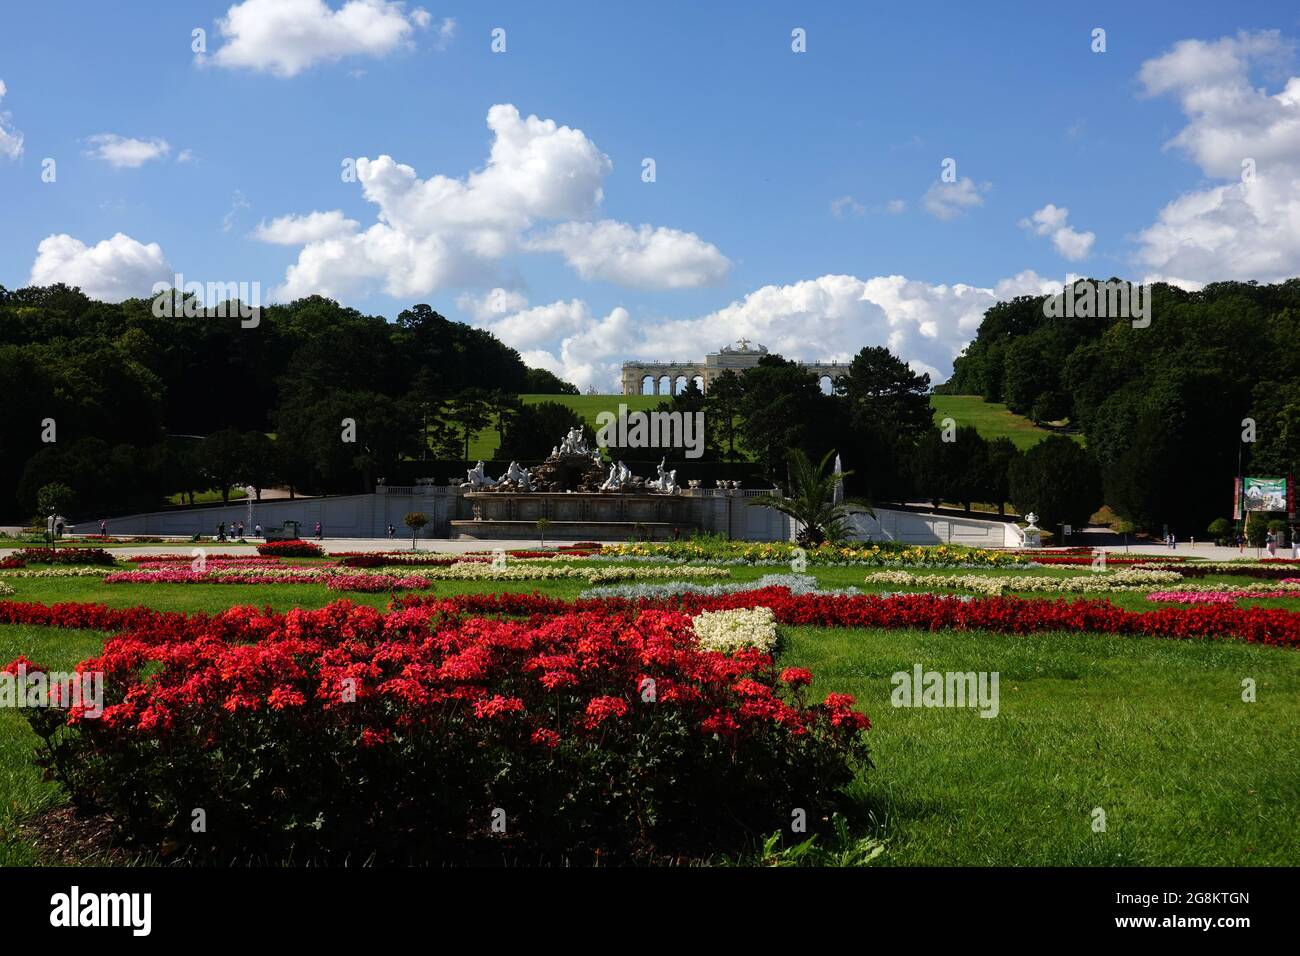 Wien, Österreich - Blick vom Schloss Schönbrunn in Richtung Neptunbrunnen und Gloriette über herrliche Blumen und Parkanlagen Foto de stock